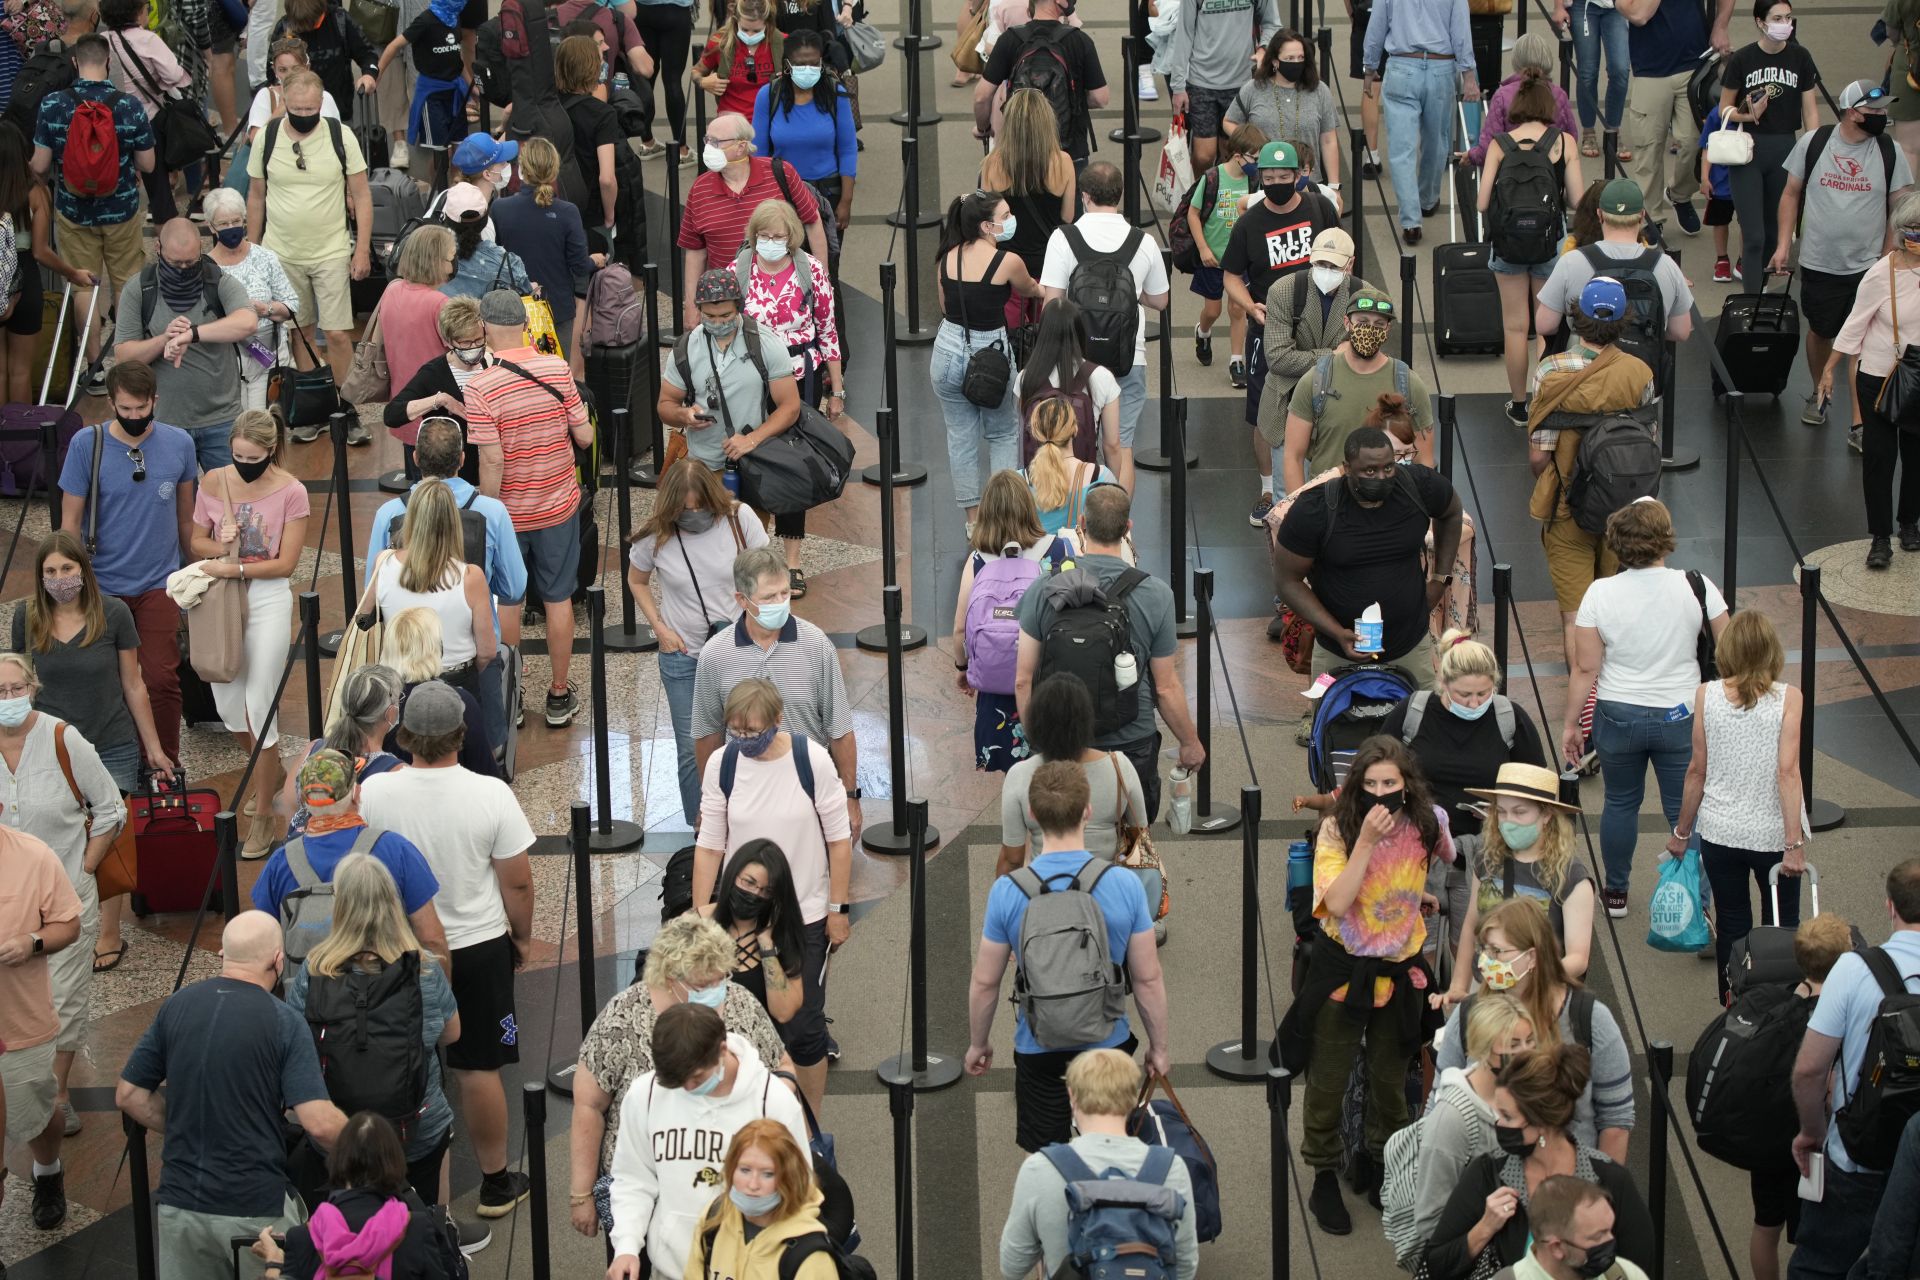 12 юни 2021 г. - Денвър, САЩ - Пътуващи се редят на дълги опашки, за да преминат през южния пункт за сигурност на международното летище